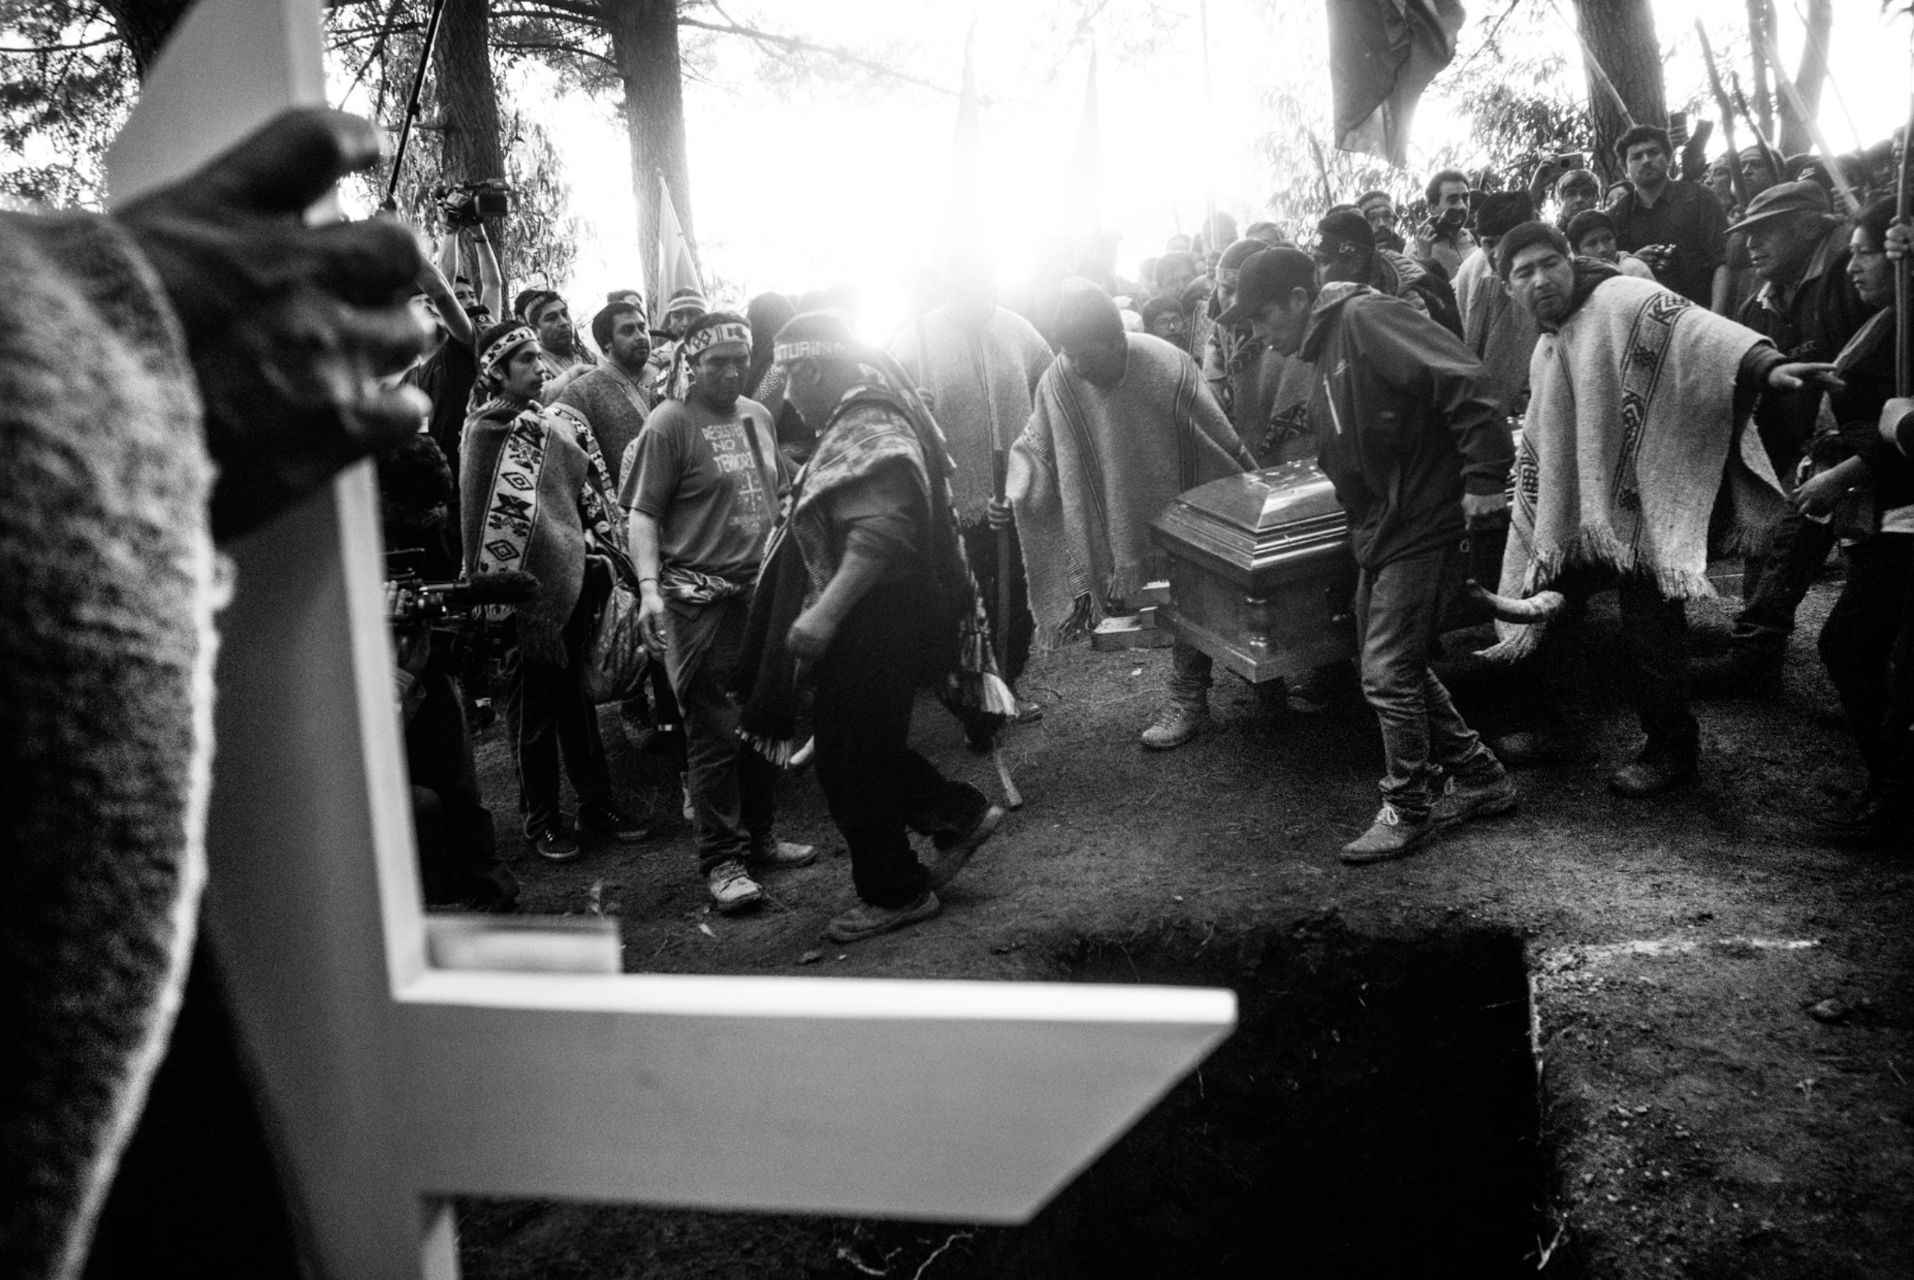 Miles de personas y decenas de referentes mapuche de diferentes comunidades se congregaron durante tres días en Temucuicui para despedir a Camilo Catrillanca, que manejaba un tractor cuando recibió un balazo por la nuca.
Foto: Pablo Piovano